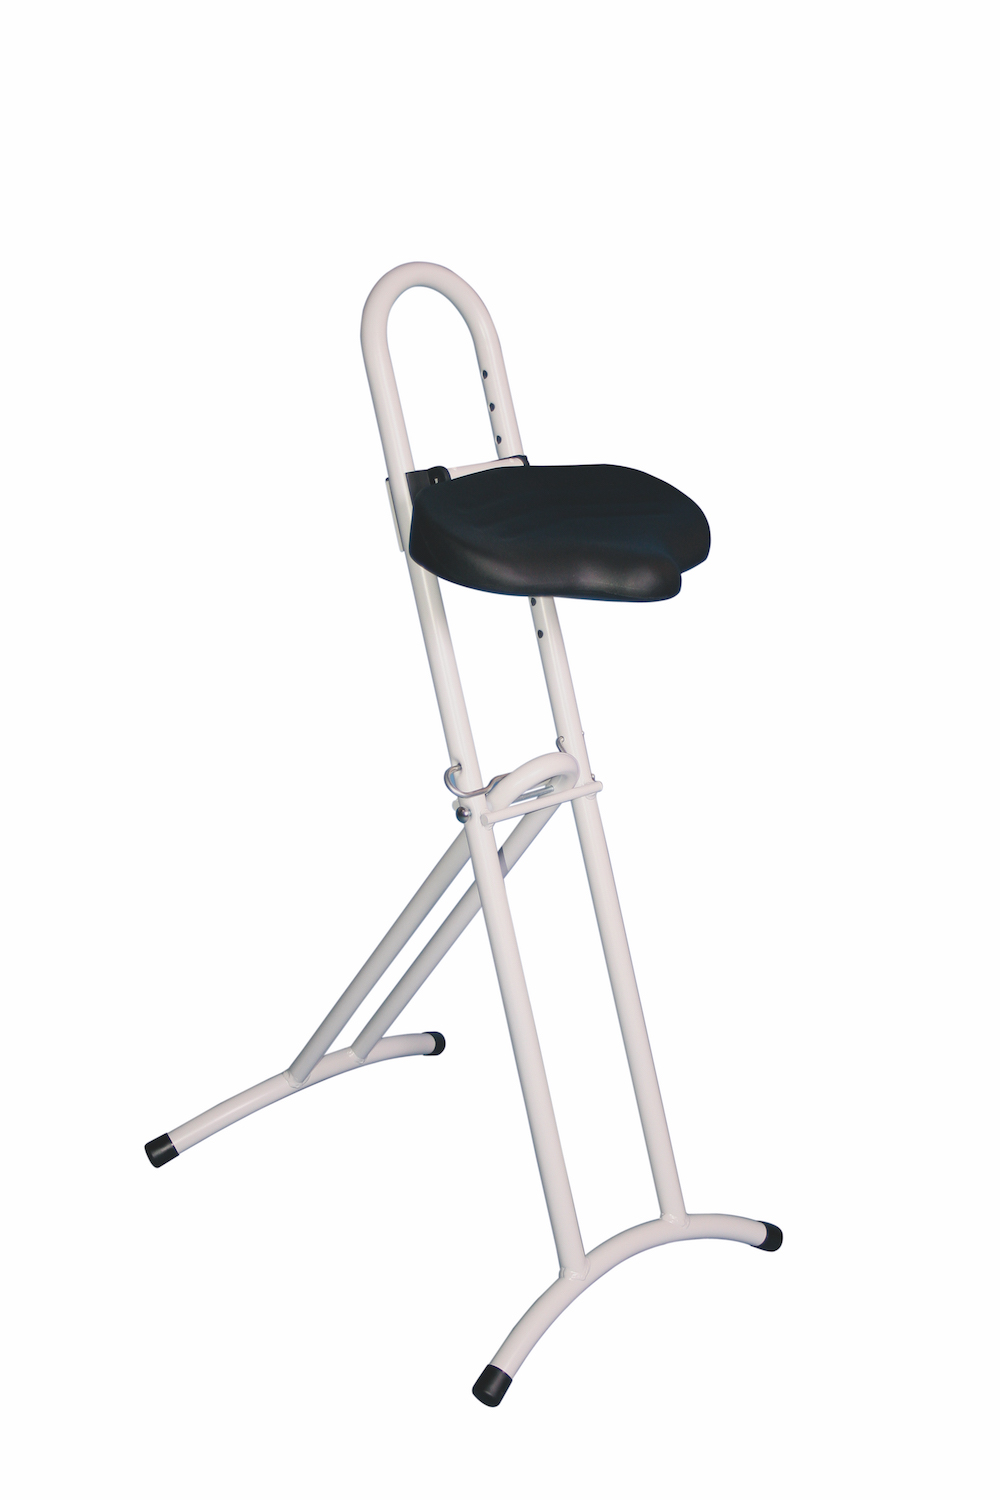 Klappbare Stehhilfe | Sitzhöhe 61-86cm | Tragfähigkeit 80kg | Polyurethane-Sitz | Schwarz/Lichtgrau